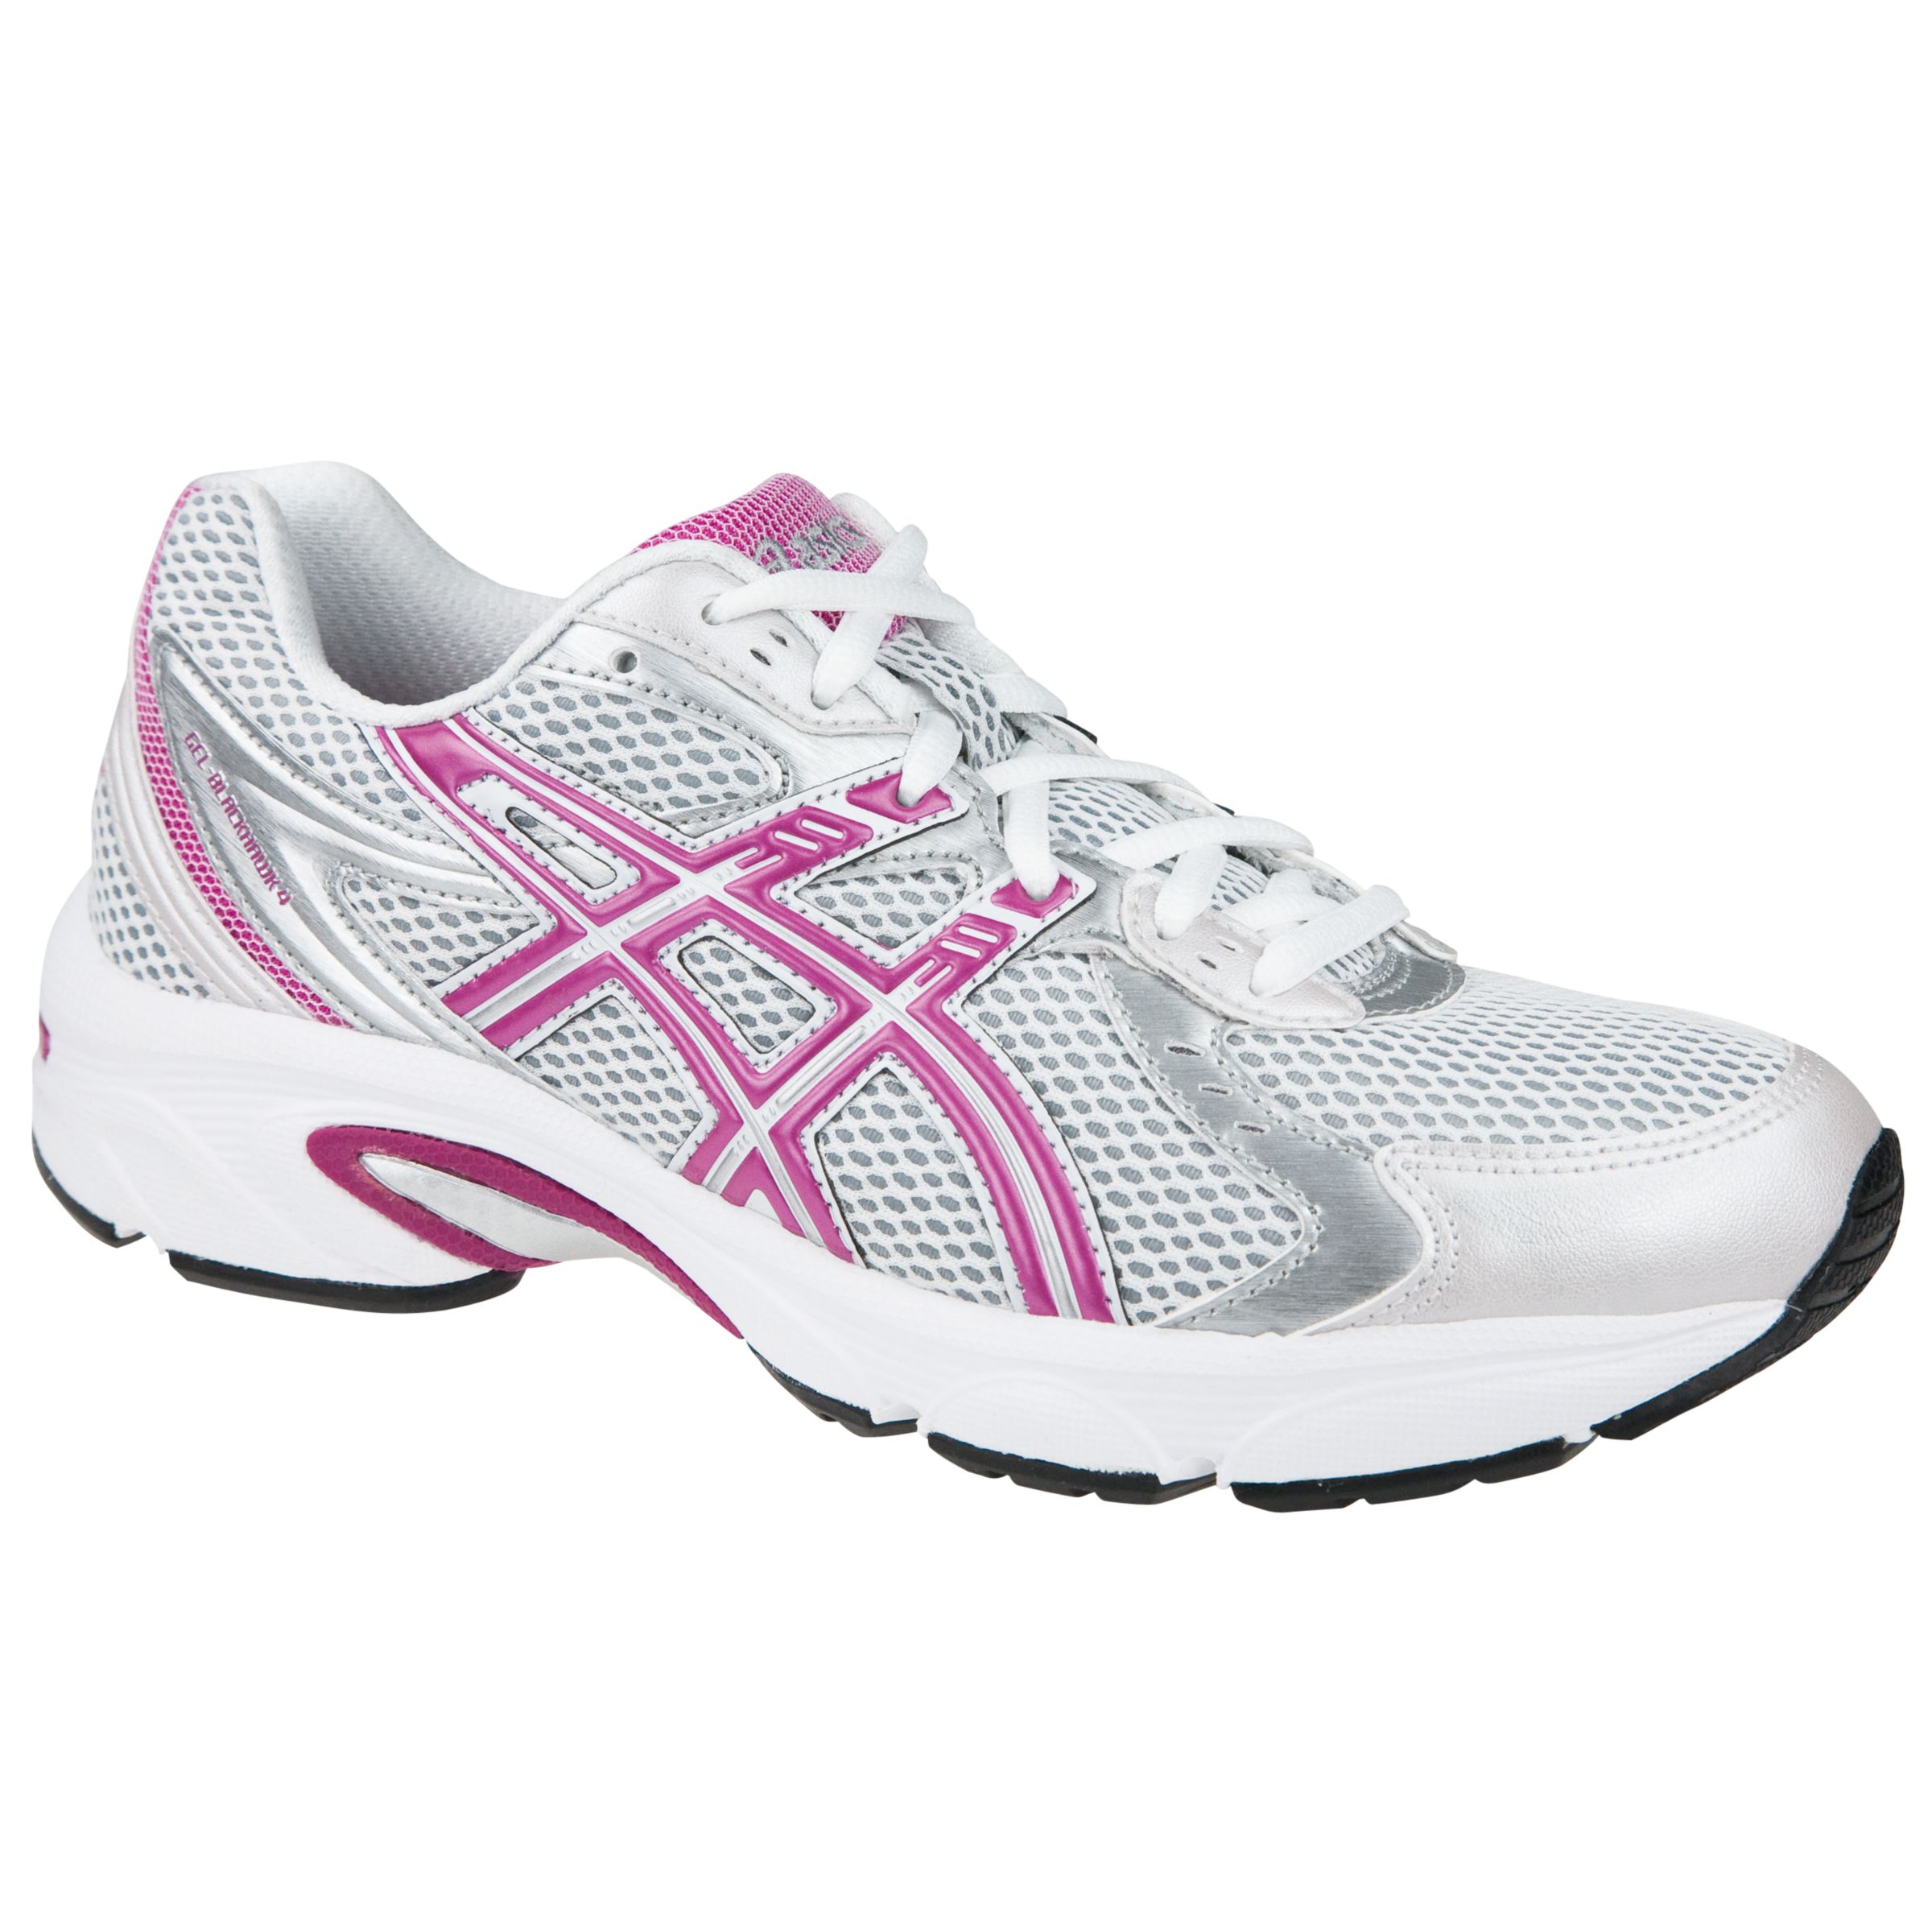 Gel Blackhawk 4 Running Shoes, White/Pink